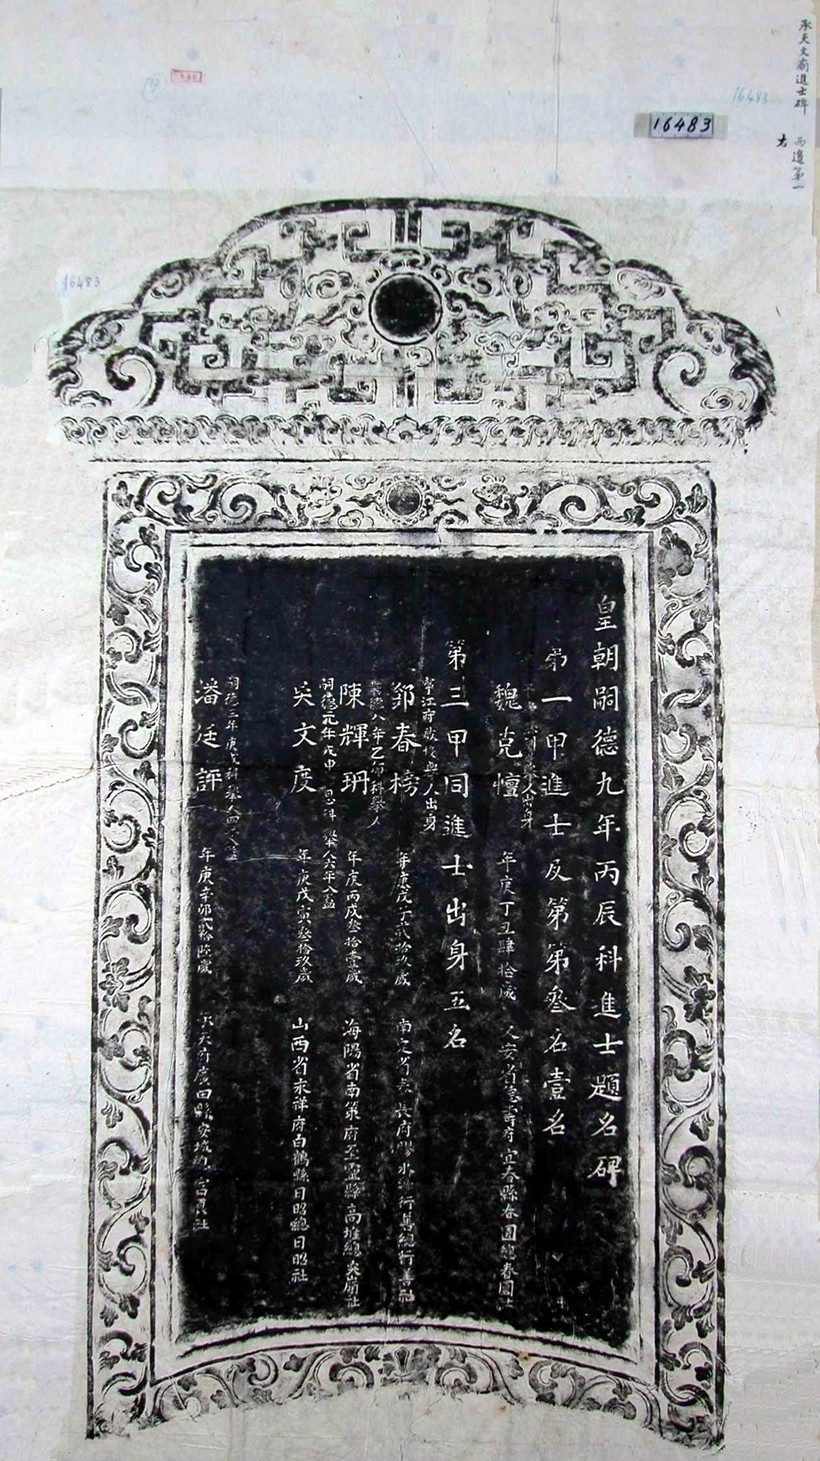 Bản in Văn bia đề danh Tiến sĩ khoa thi năm Tự Đức thứ 9 (1856), Ngụy Khắc Đản đỗ Đệ nhất giáp Tiến sĩ cập đệ đệ tam danh.